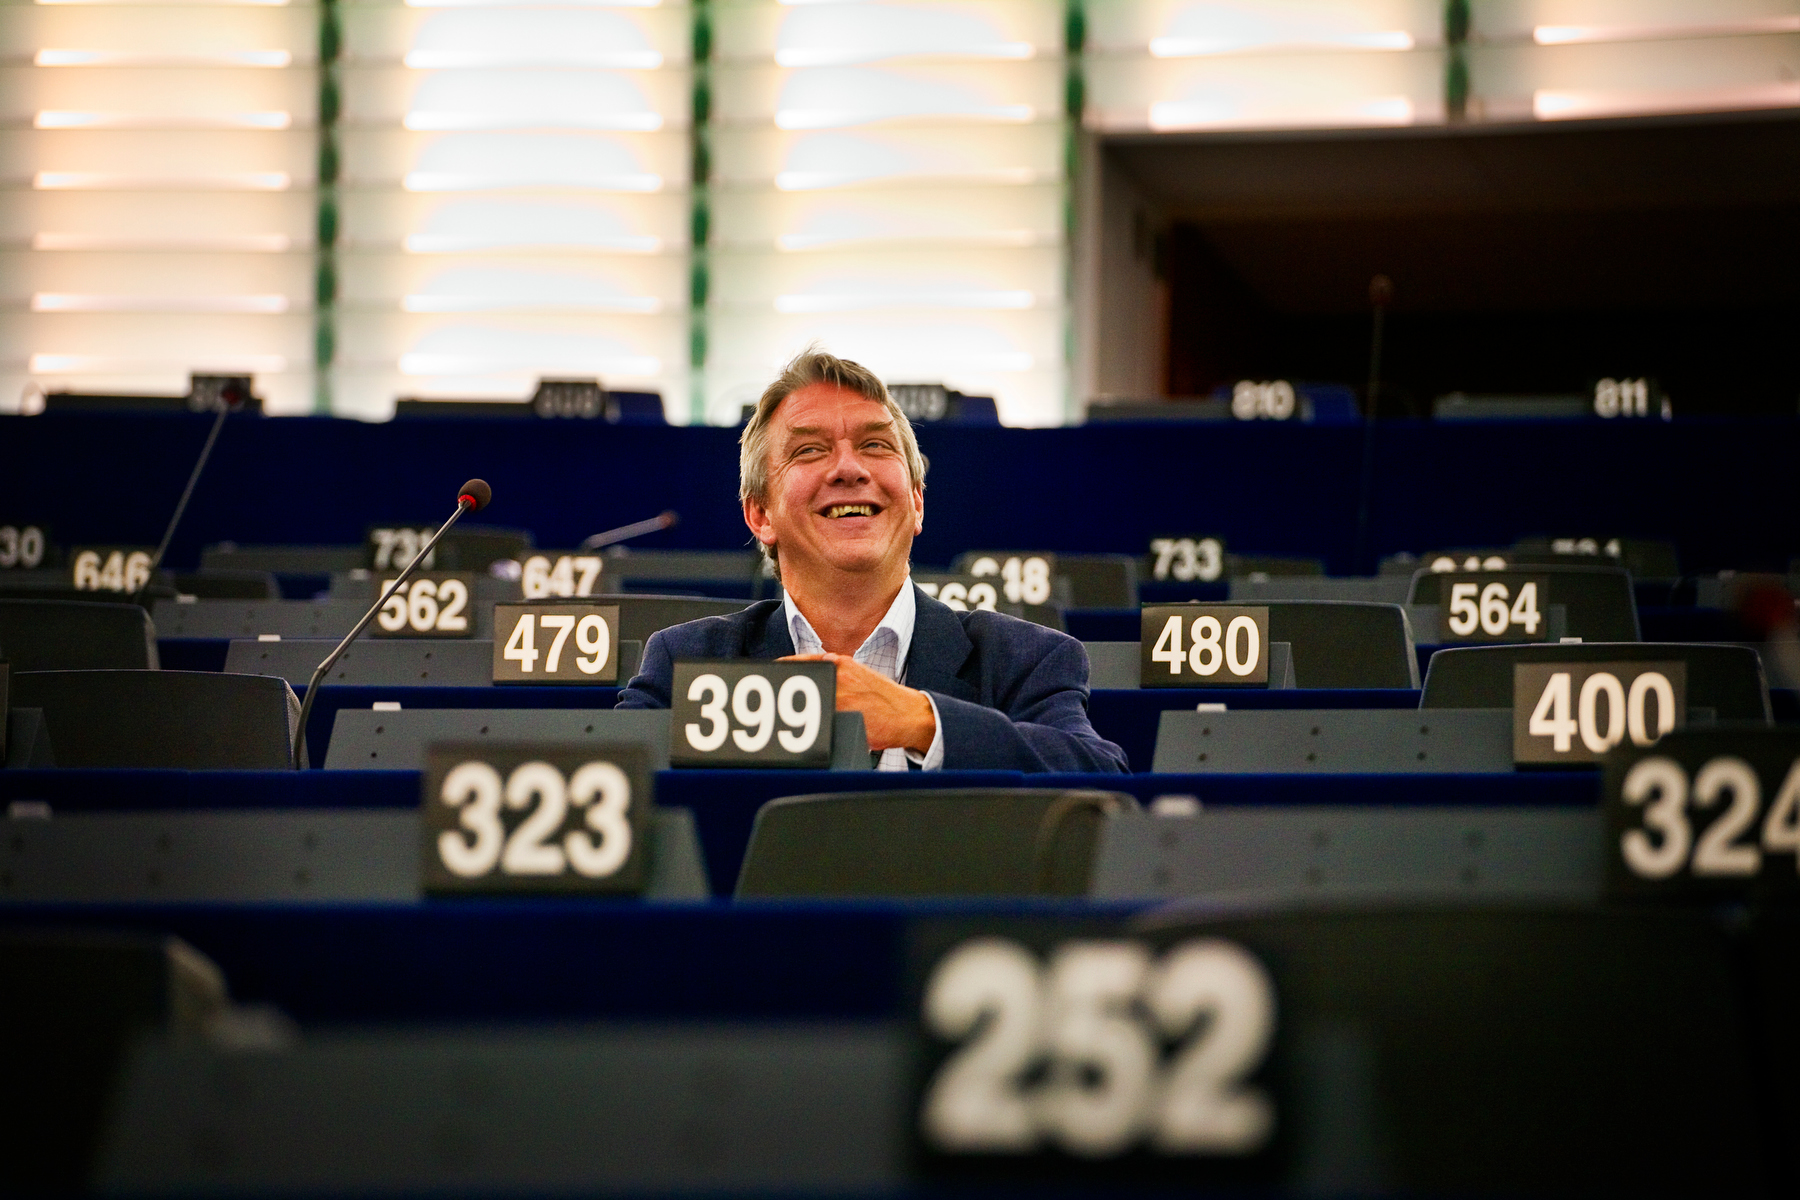 Fildelning, EU-kommissionen, Europaparlamentet, Christian Engström, Piratpartiet, Integritet, Riksdagsvalet 2010, Acta, EU